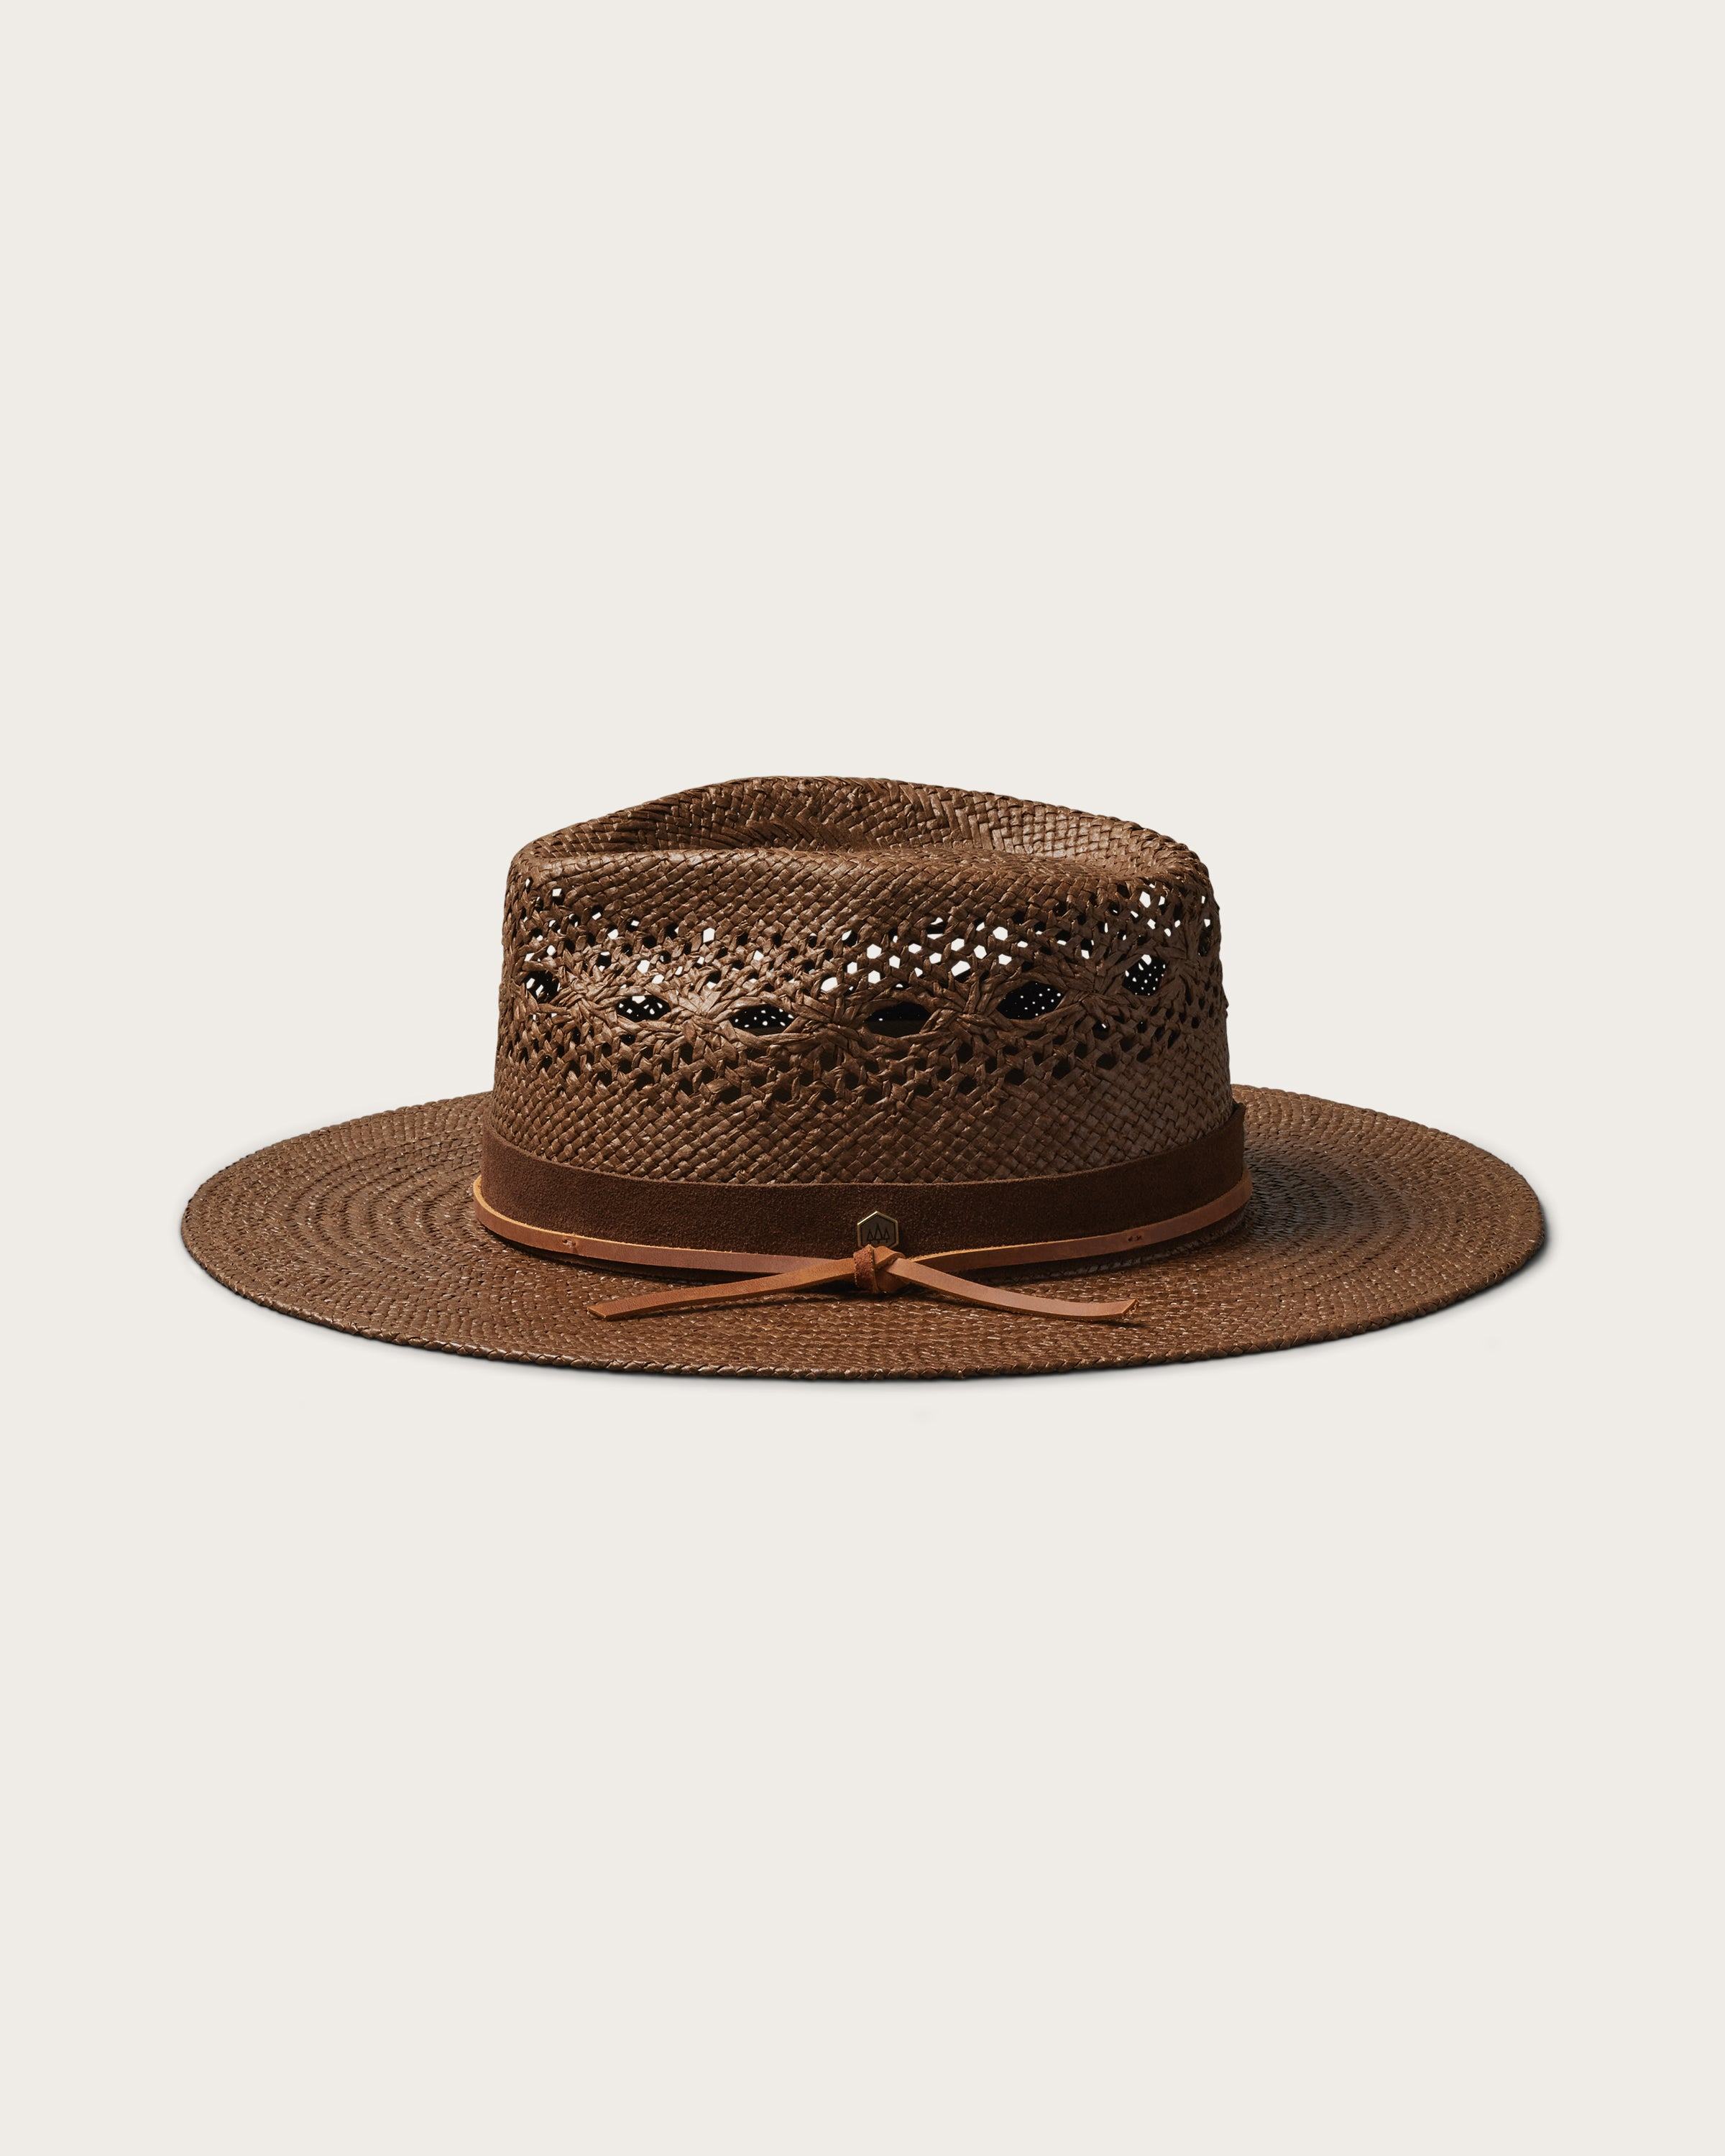 Hemlock Miller Straw Hat in Mocha color side profile